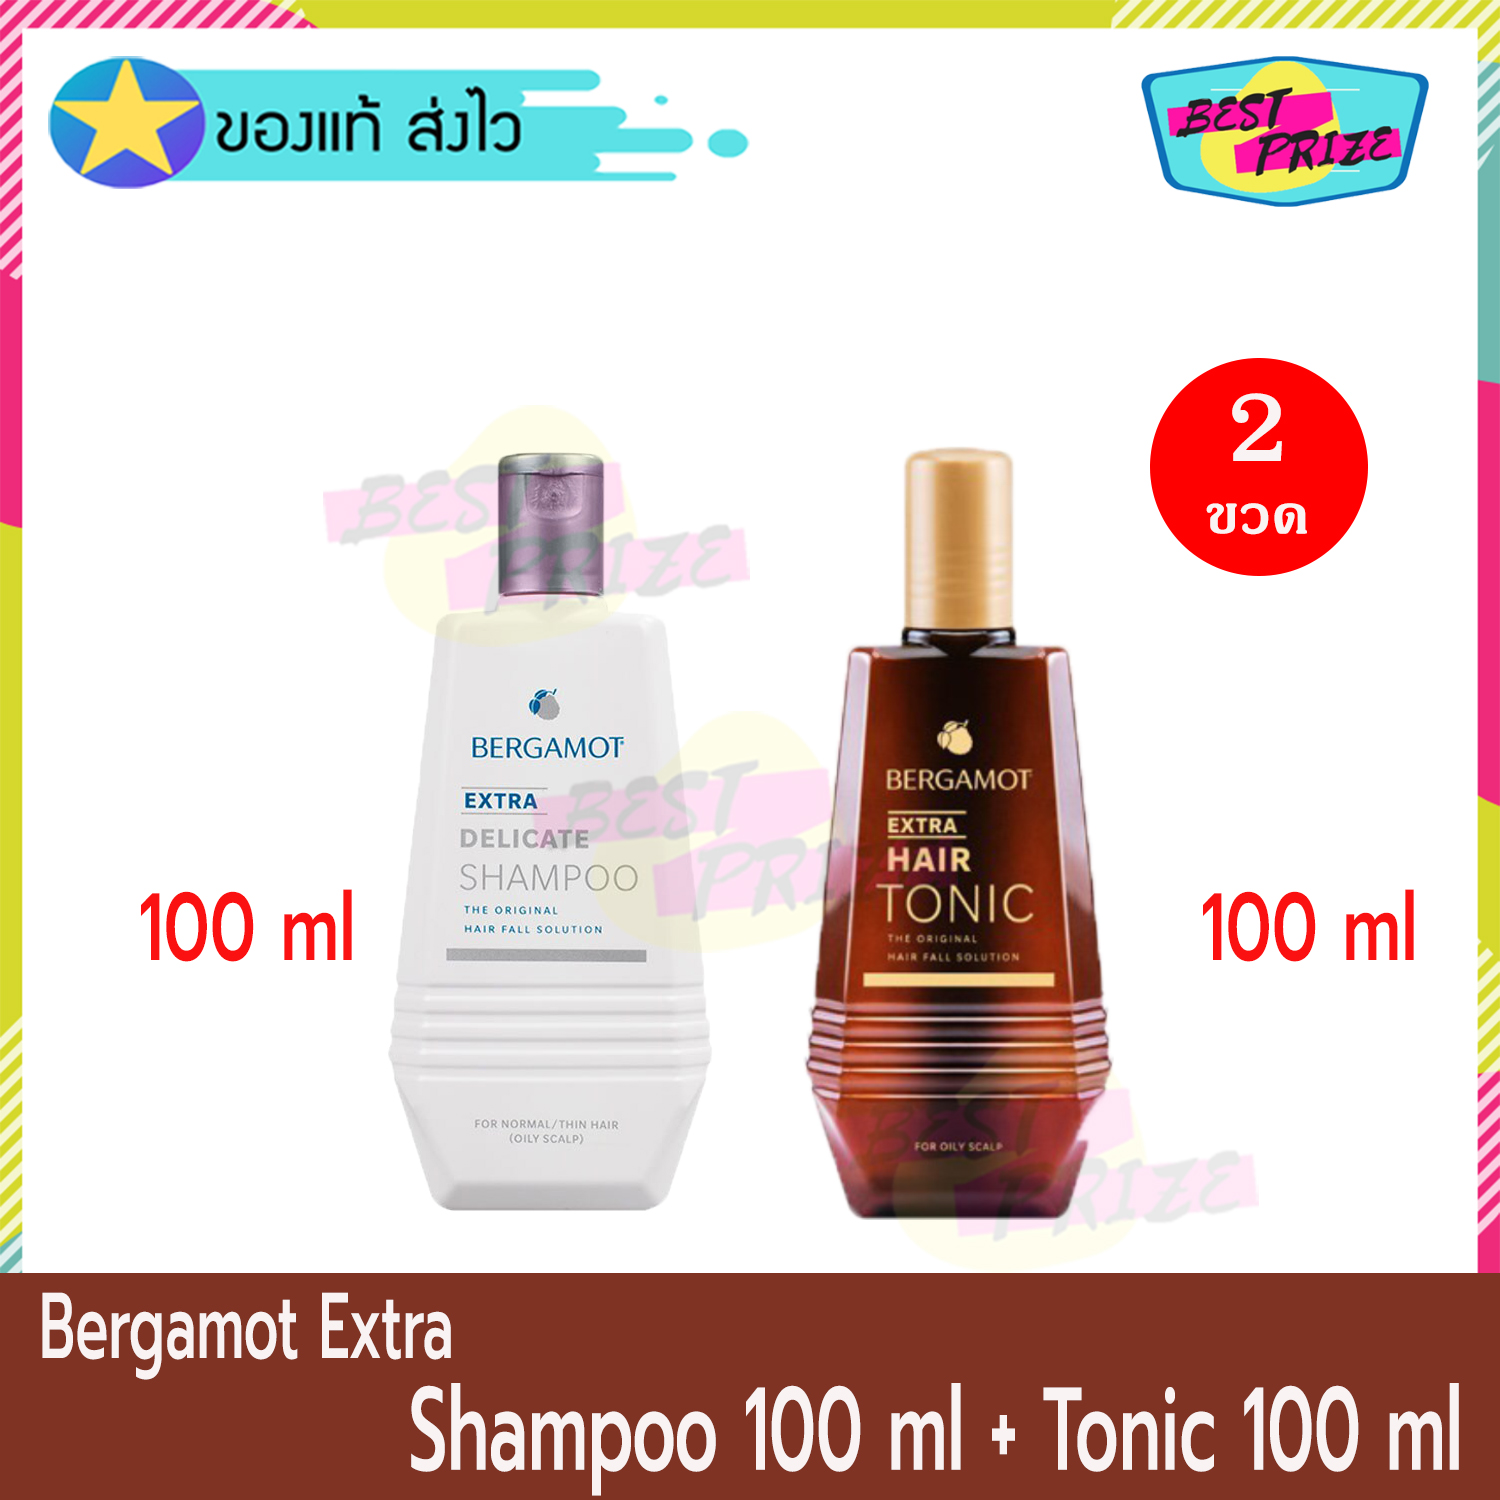 ราคา (เซ็ตดูแลผมร่วง) Bergamot Extra Delicate Shampoo 100 ml (จำนวน 1 ขวด) + Bergamot Extra Hair Tonic 100 ml (จำนวน 1 ขวด) เบอกาม็อท เอ็กซ์ตร้า แชมพู แชมพูสระผม แชมพูดูแลผมร่วง ยาสระผม สูตรเข้มข้น ผมร่วง ผมบาง